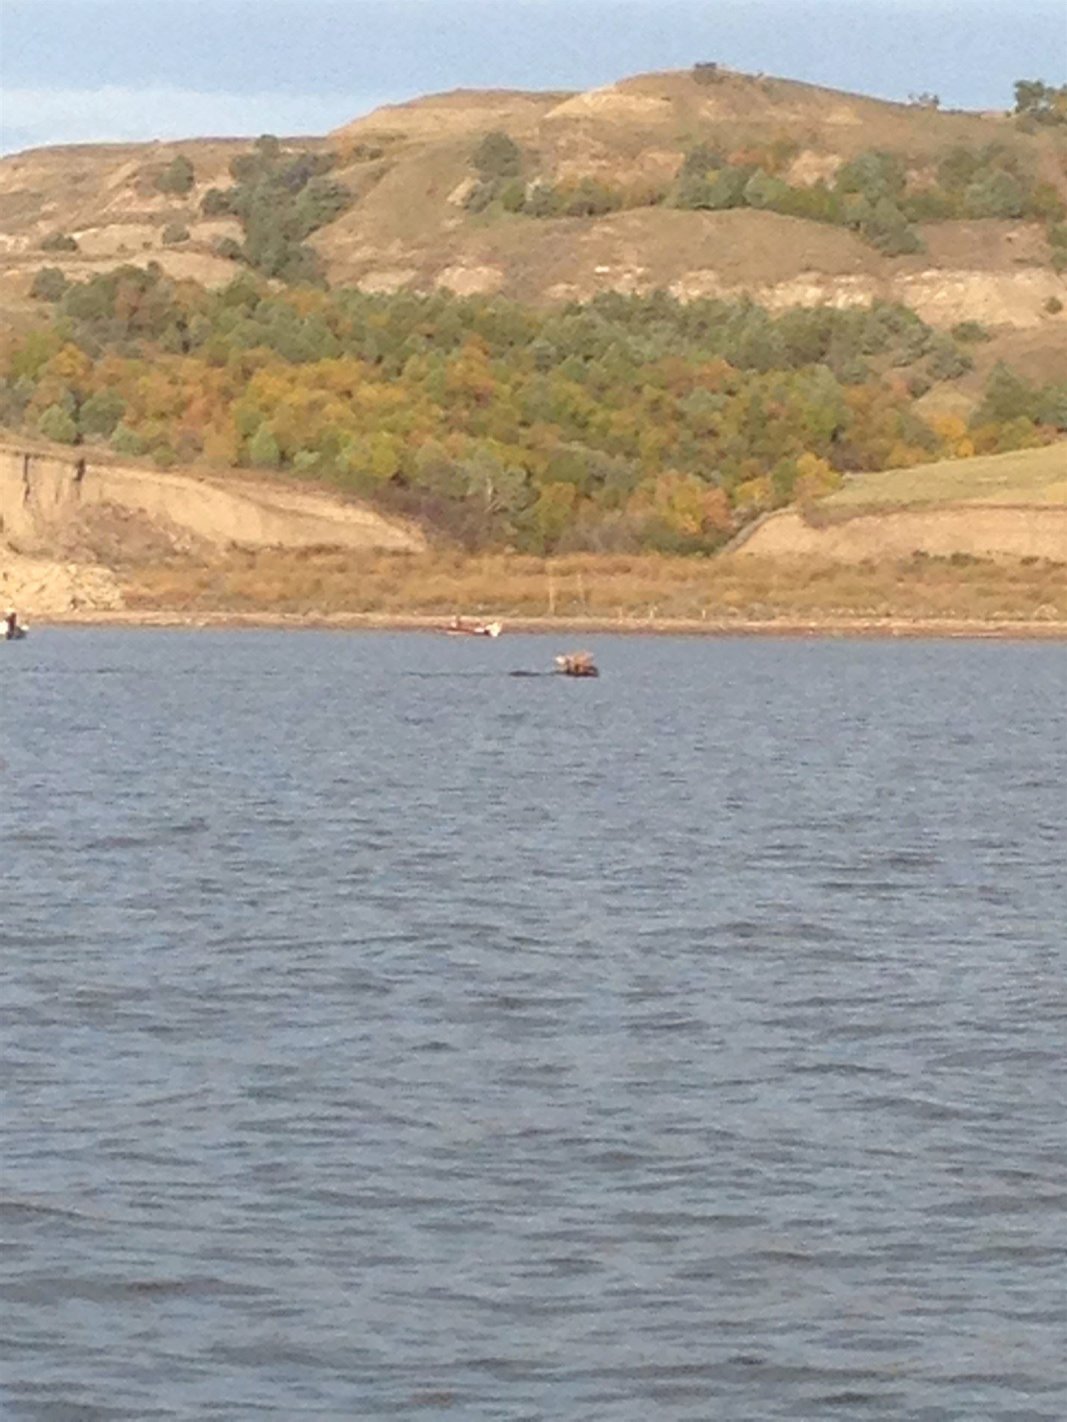 North Dakota Moose swimming across Lake Sakakawea